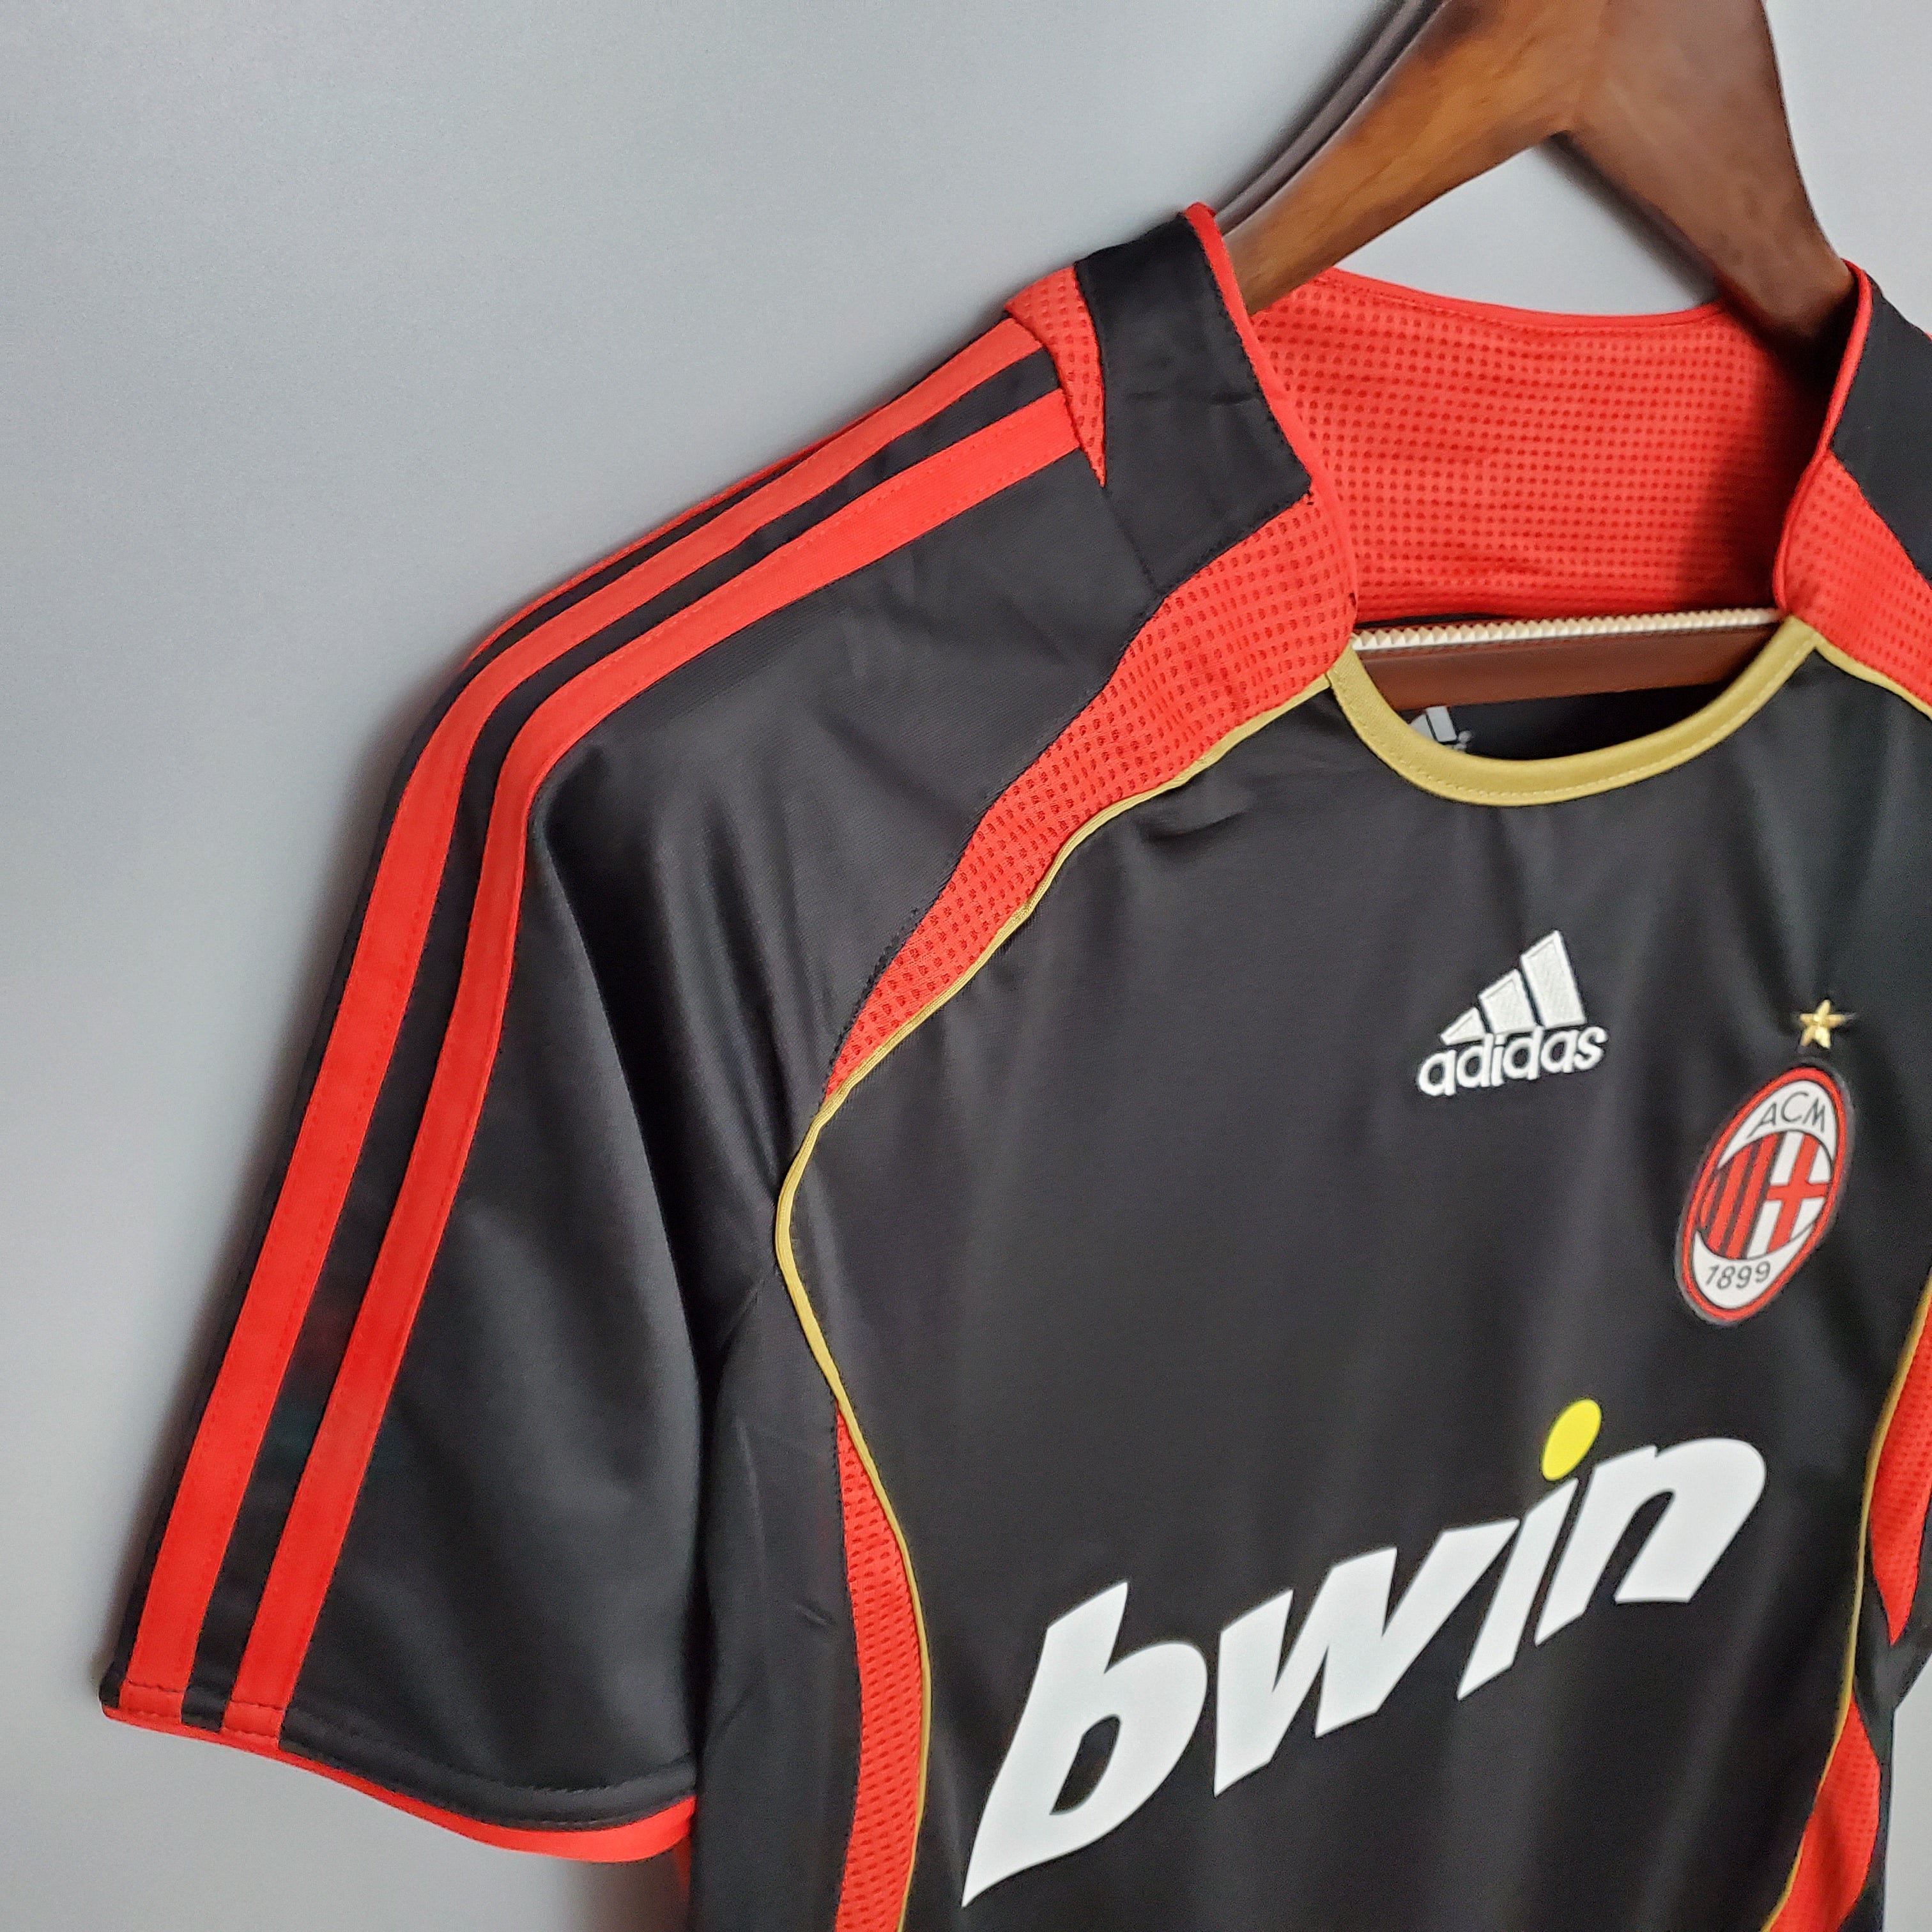 AC Milan 2006-07 Third Jersey